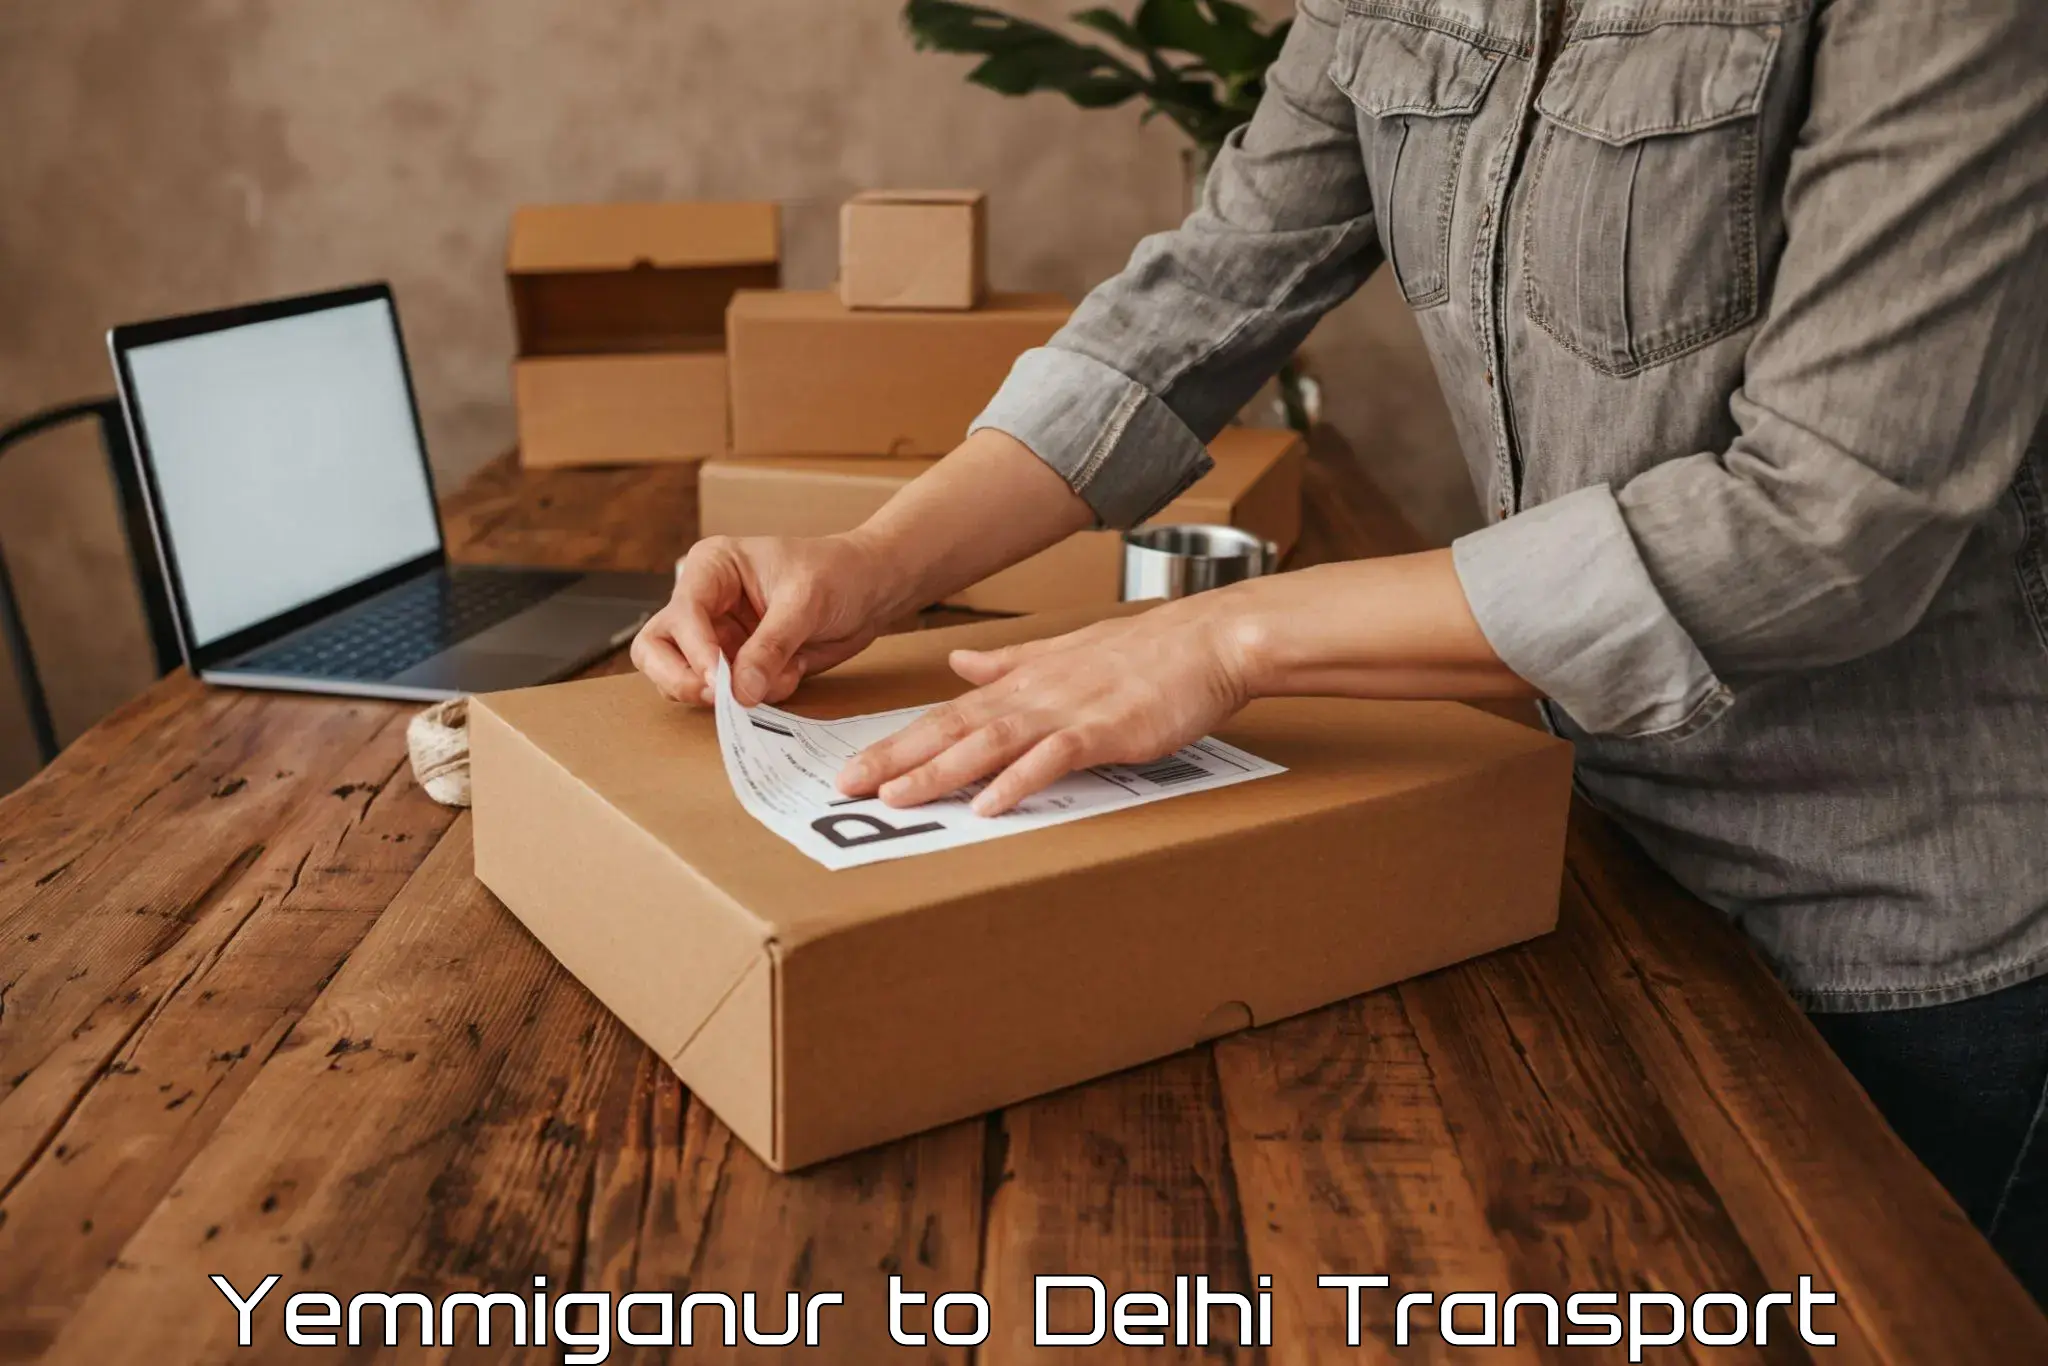 Online transport service Yemmiganur to IIT Delhi